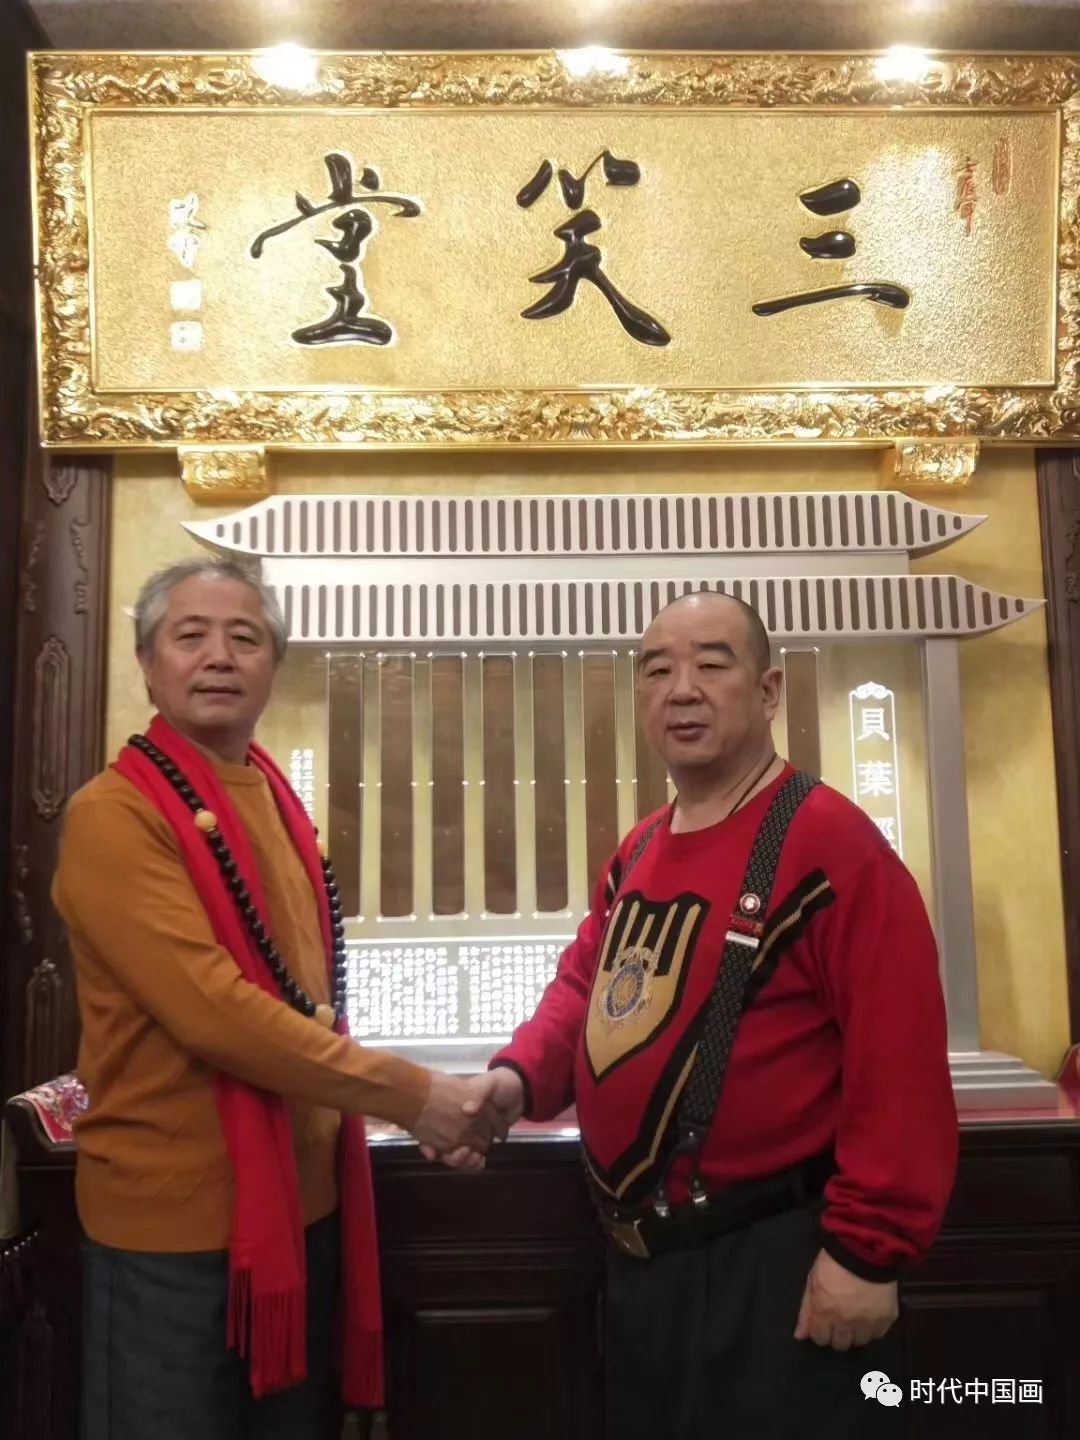 中国佛教文化交流协会副会长,三笑堂主宋益民先生收藏著名书画艺术